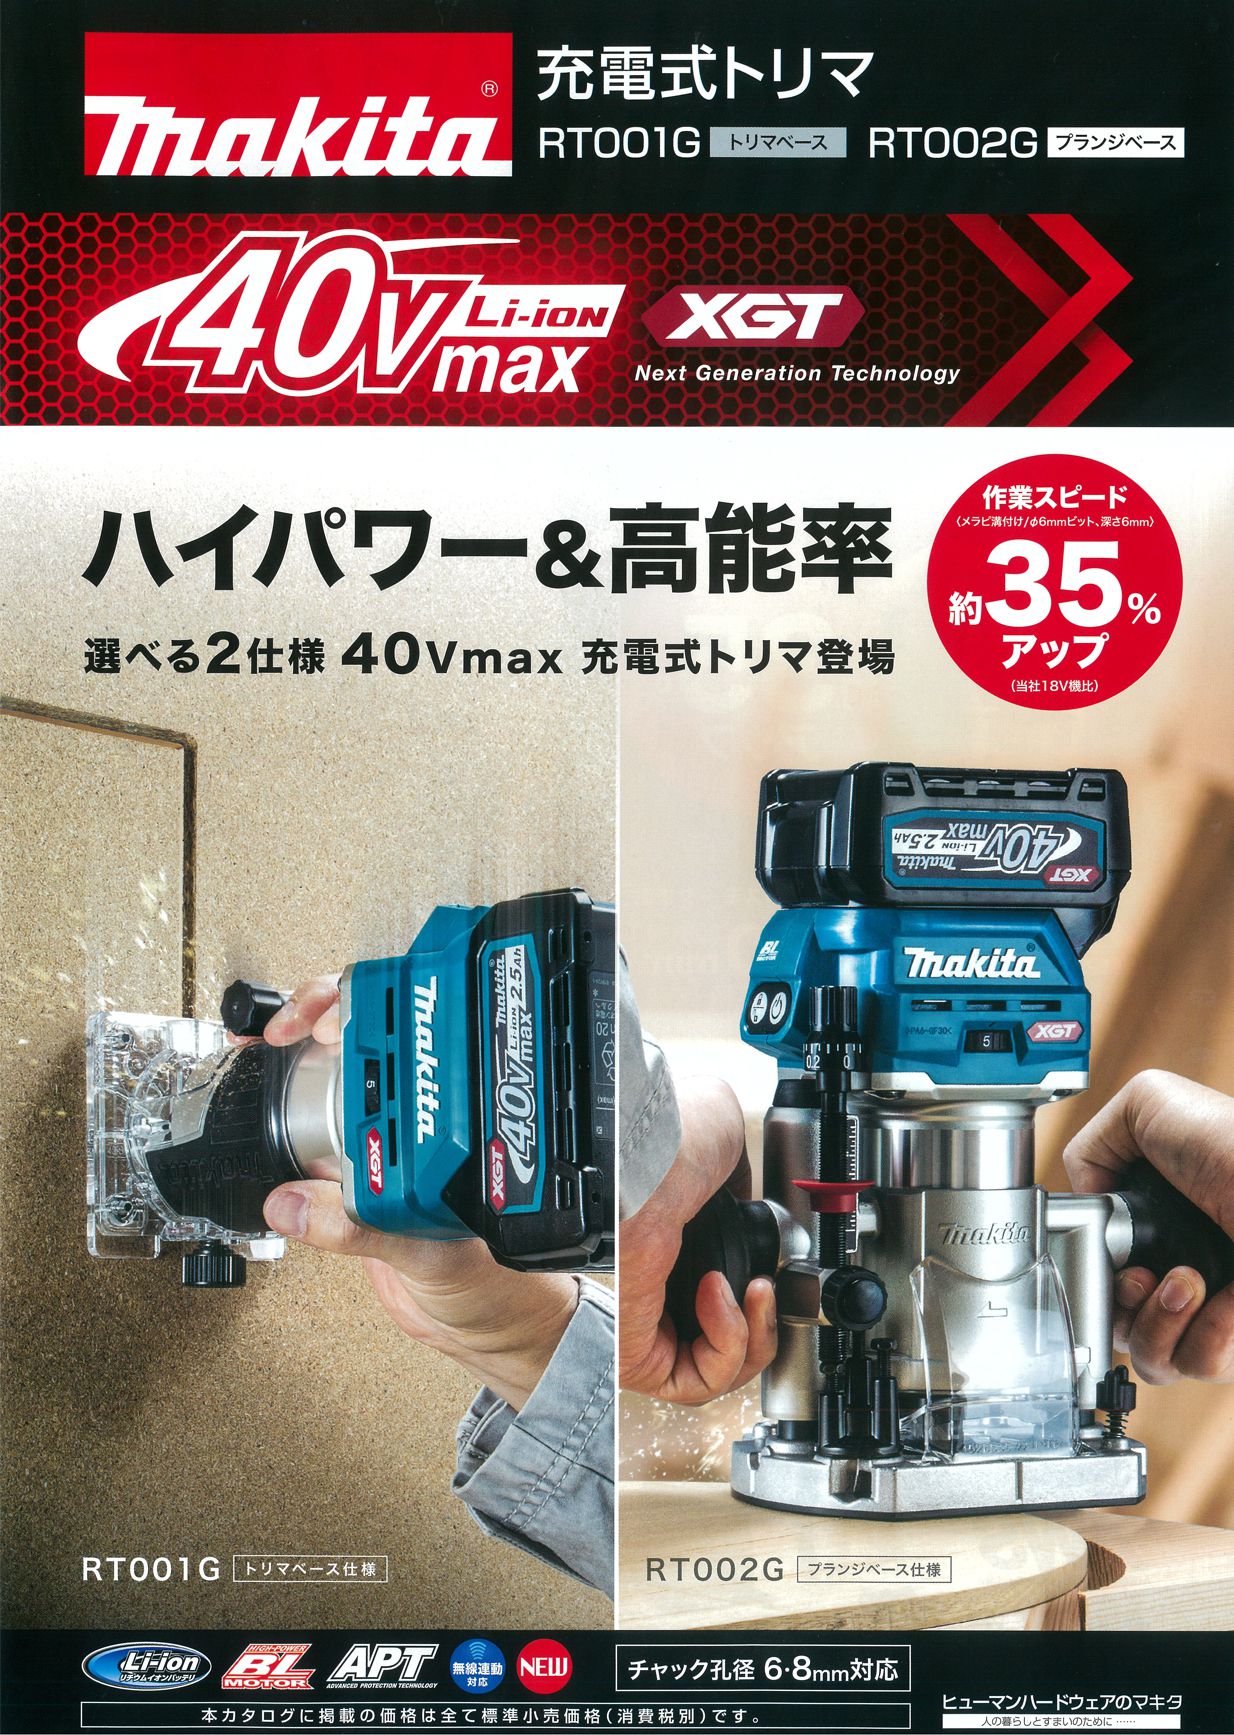 マキタ RT001GRDX 40Vmax-2.5Ah充電式トリマ ウエダ金物【公式サイト】